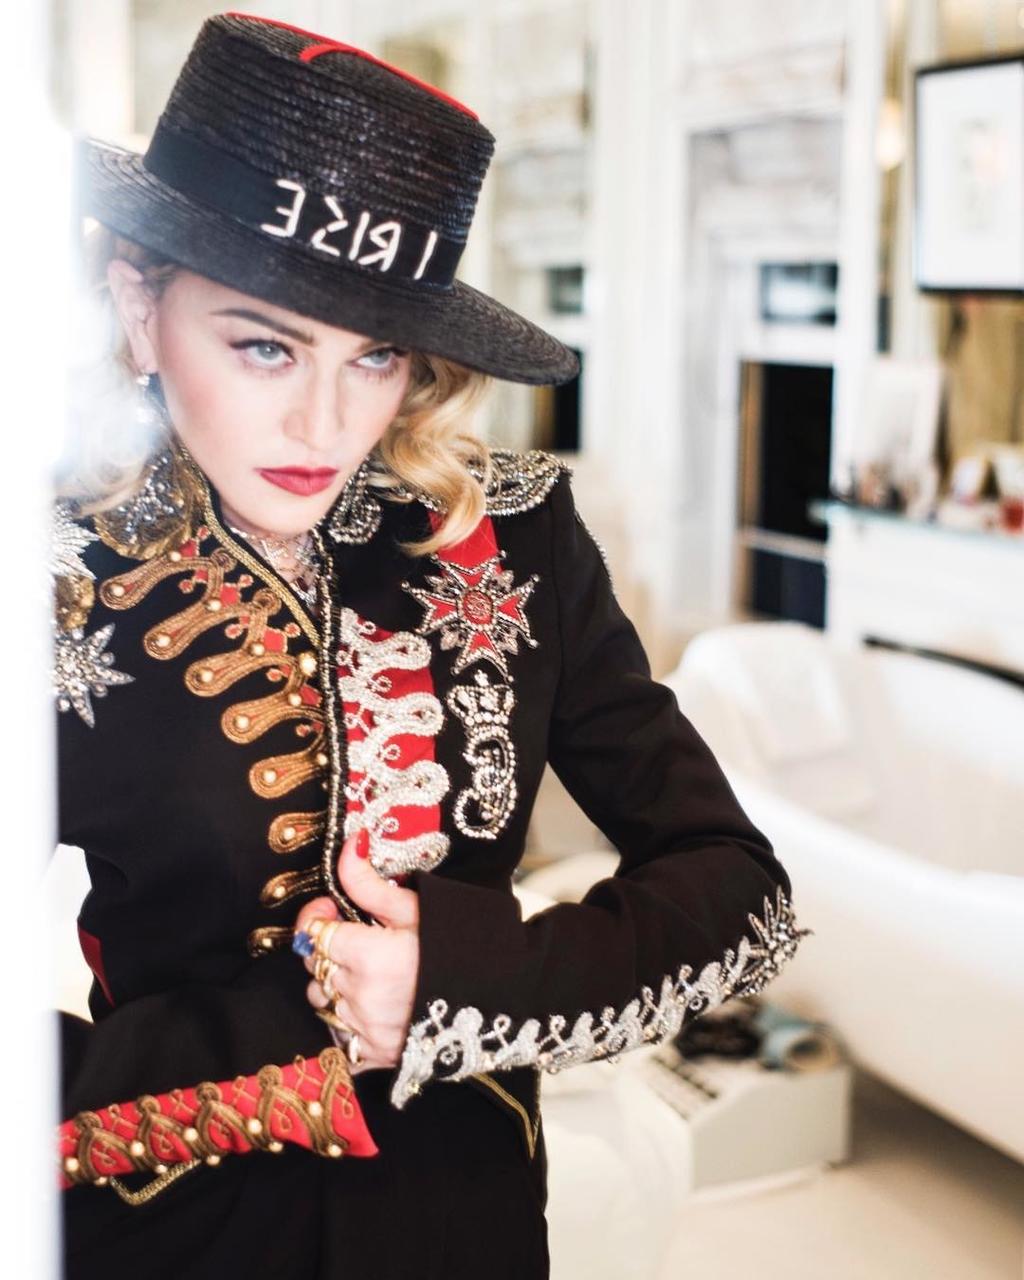 La cantante estadounidense Madonna se convirtió en la primera mujer en recibir el reconocimiento “Defensor del cambio” dentro de los Glaad Media Awards. (ESPECIAL)